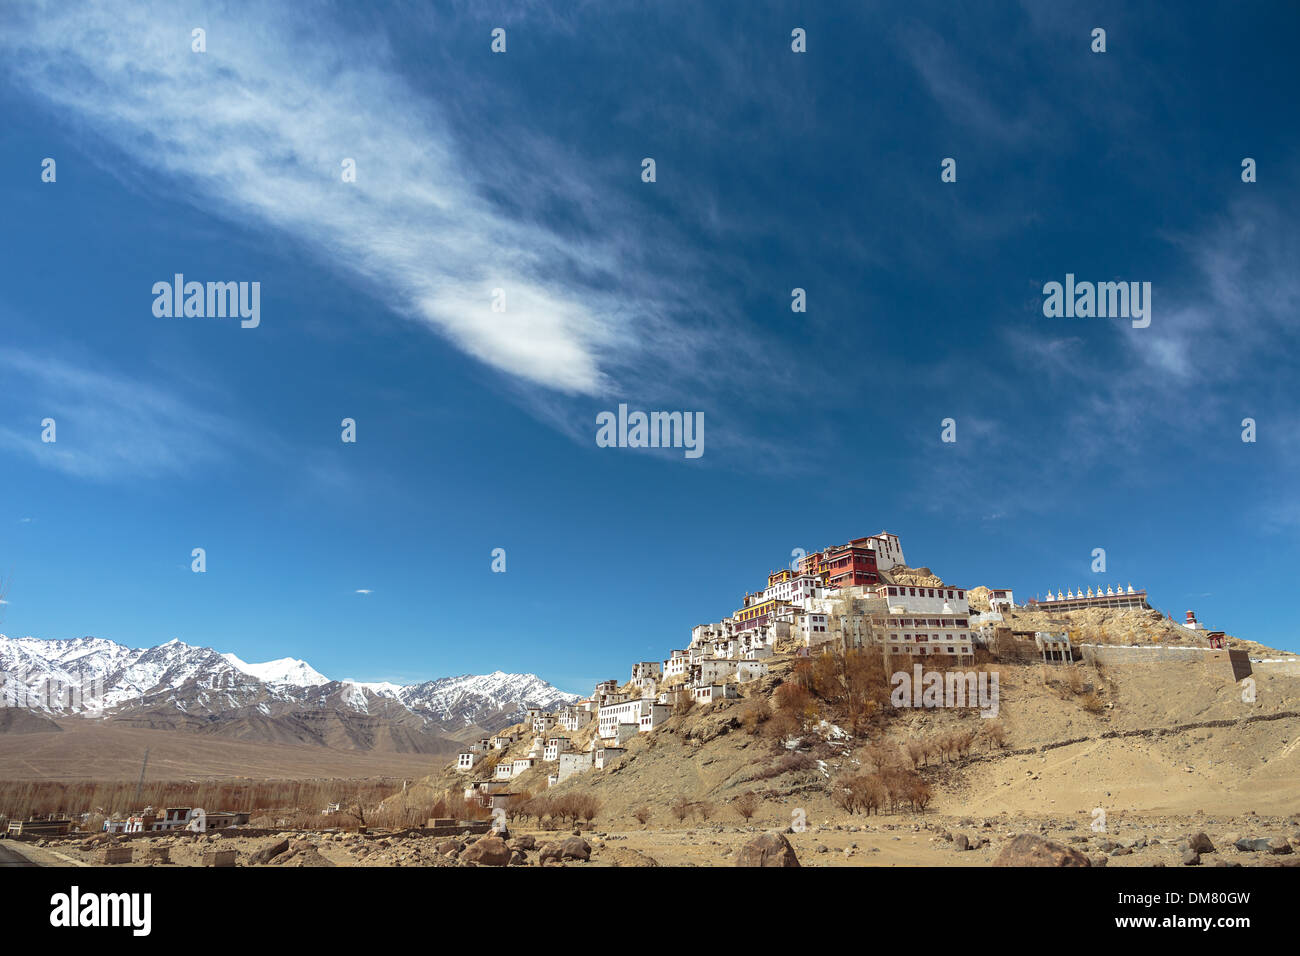 Le monastère bouddhiste de Thiksey est impressionnant perché au sommet d'une haute colline dans la vallée de l'Indus de la province du Ladakh dans les montagnes himalayennes de l'Inde Banque D'Images